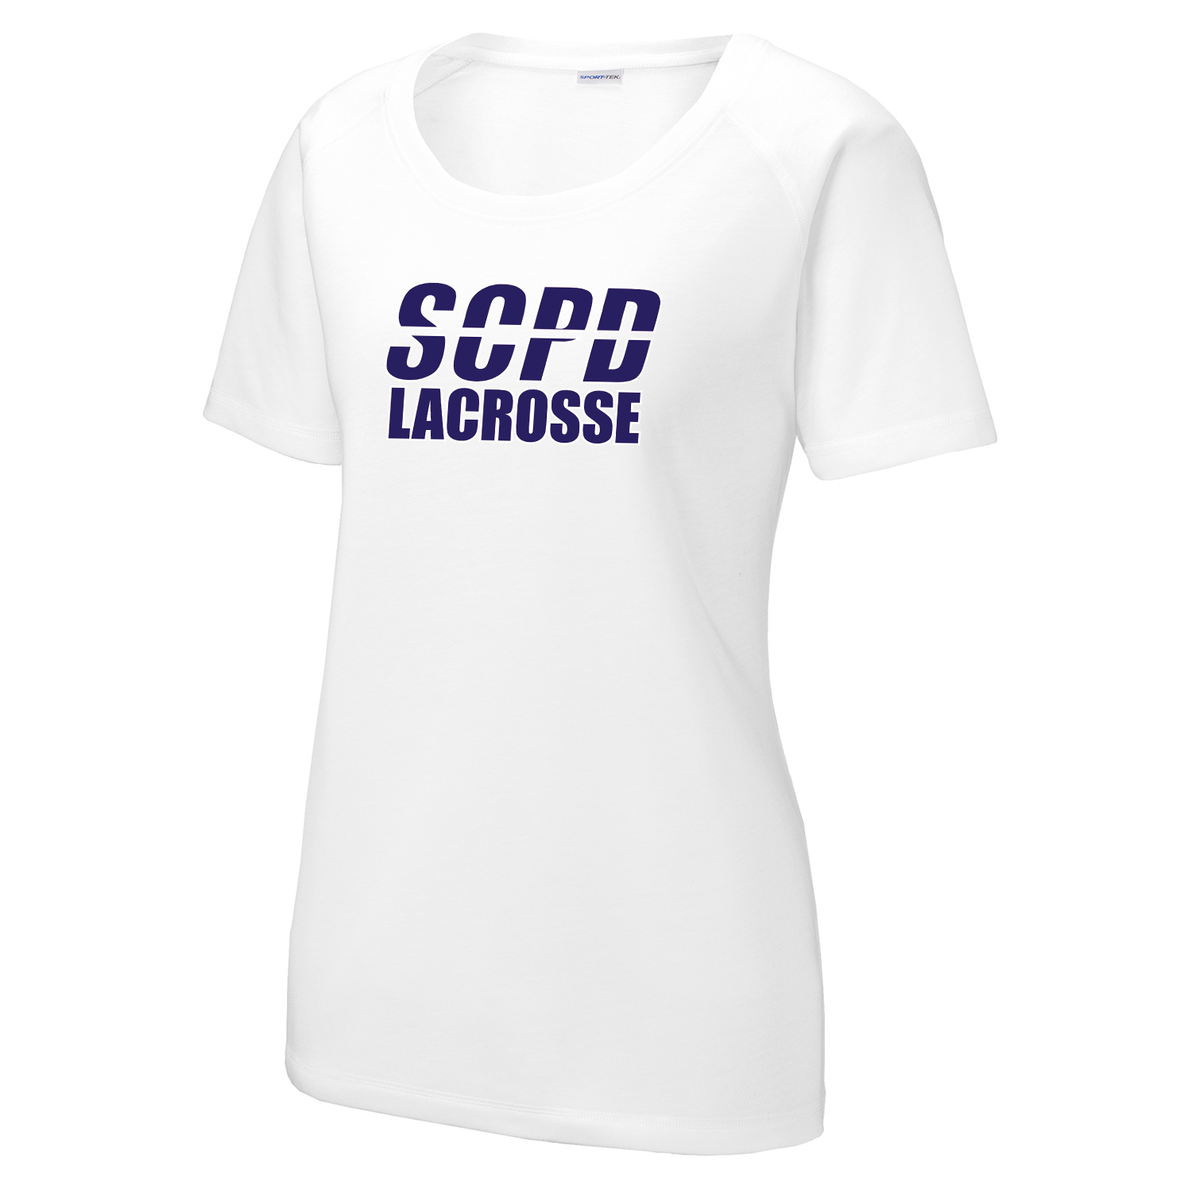 SCPD Lacrosse Women's Raglan CottonTouch